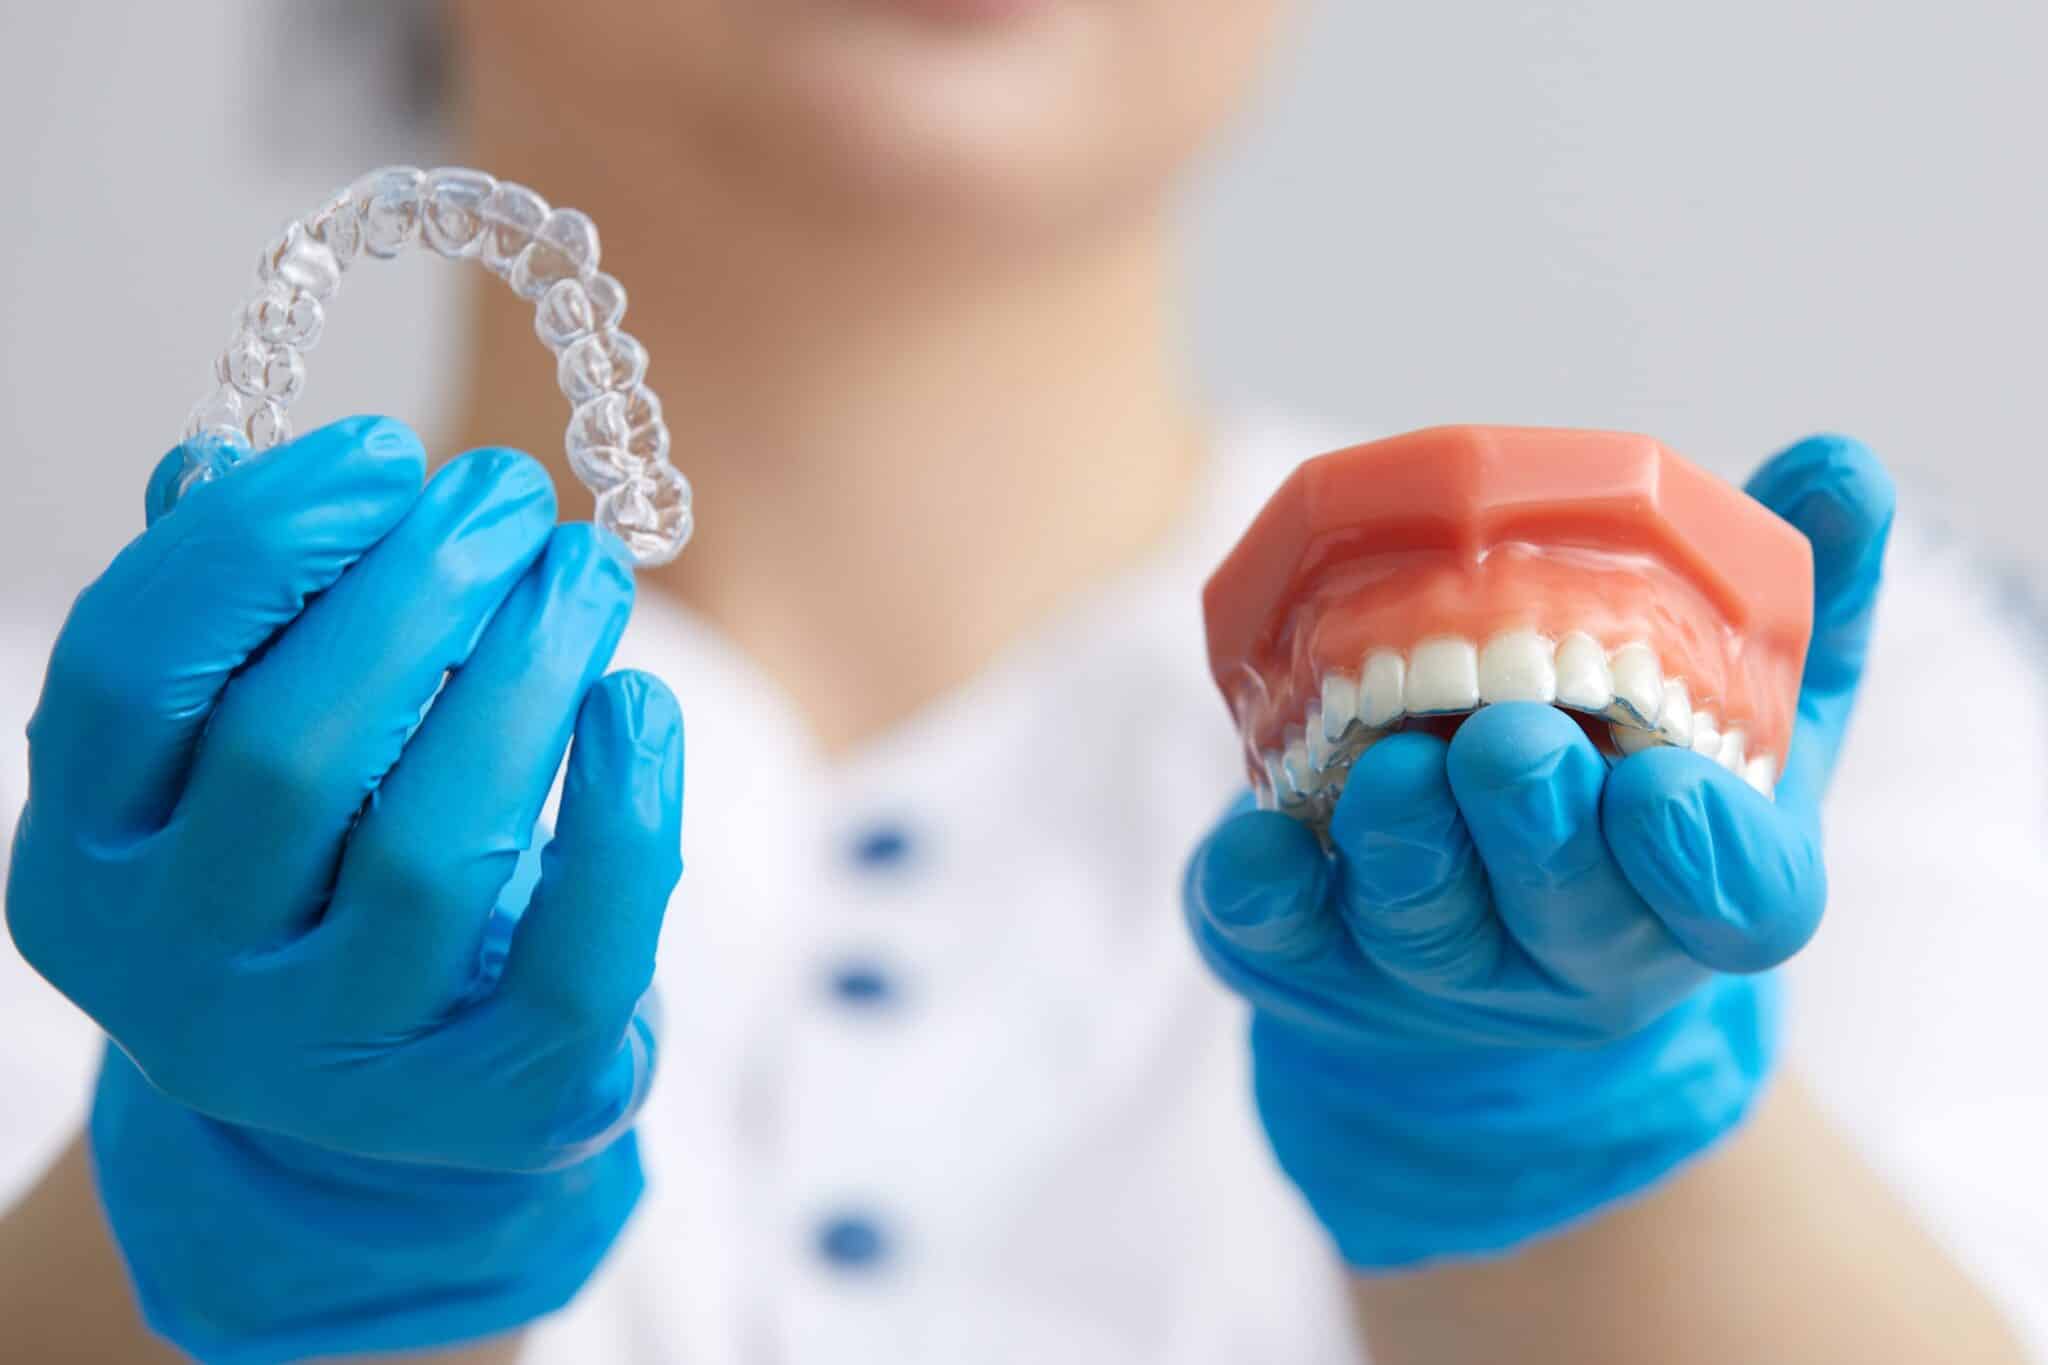 Surcomplémentaire orthodontie adulte : comment fonctionne-t-elle ?